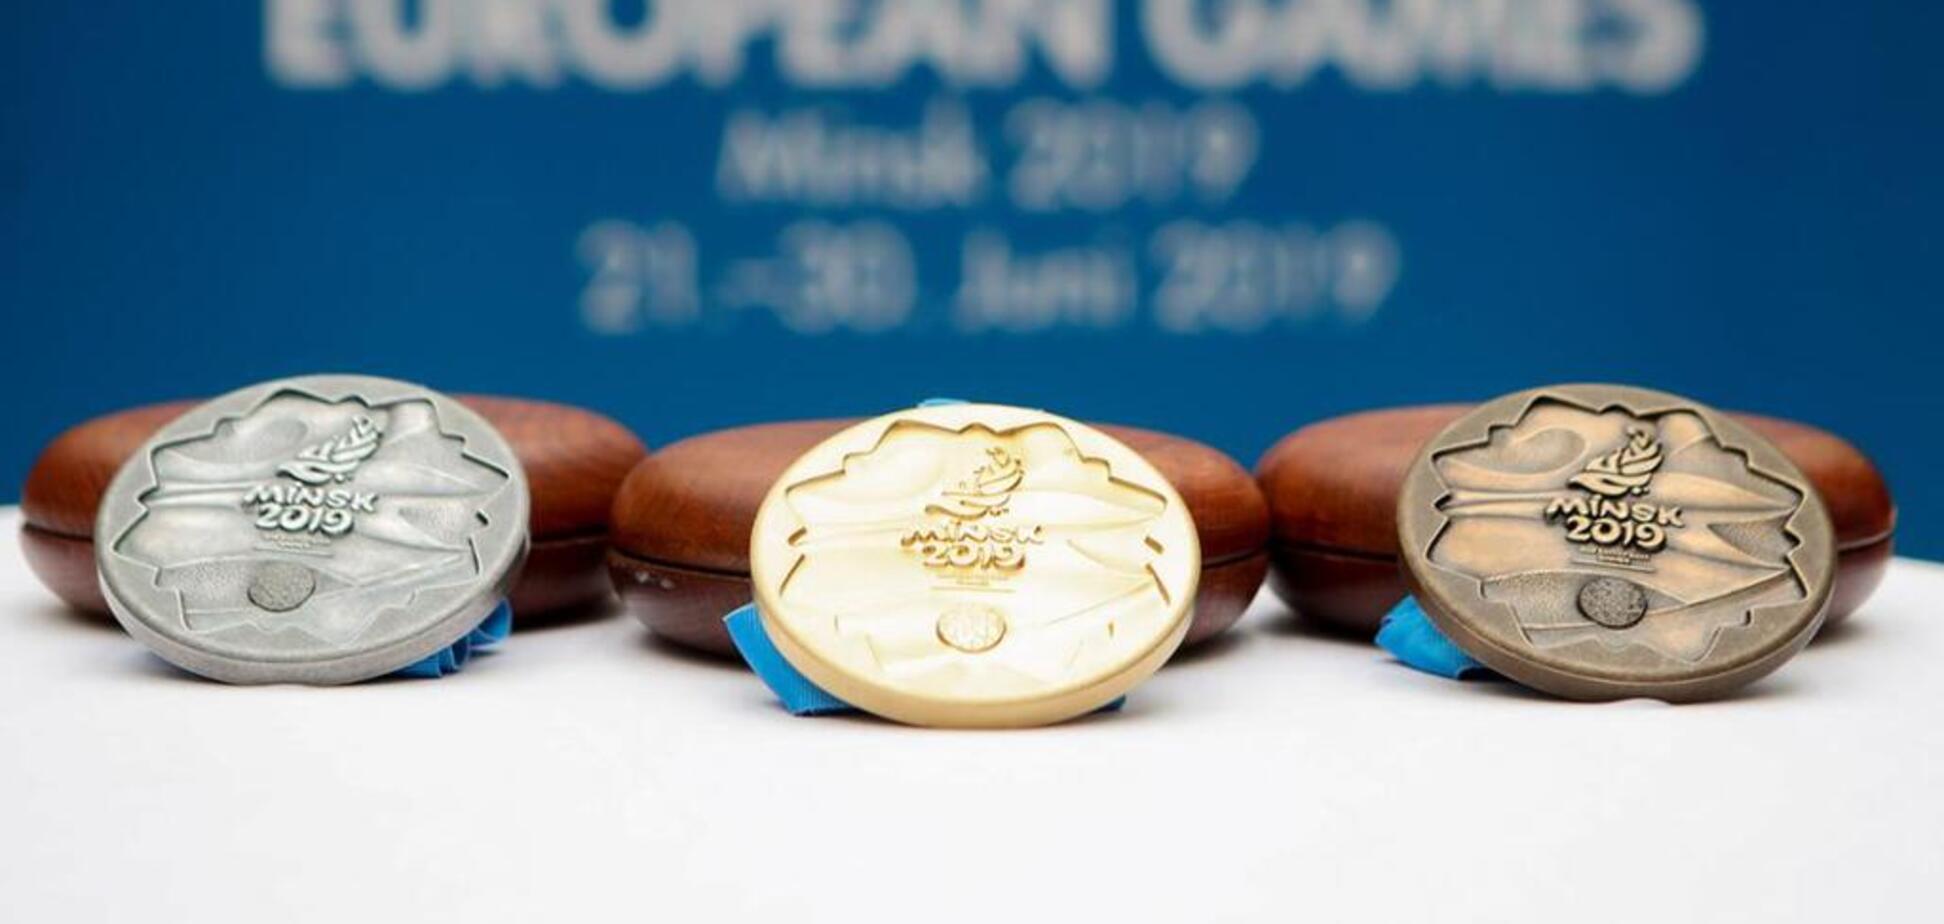 Україна в трійці кращих! Підсумковий медальний залік Європейських ігор-2019